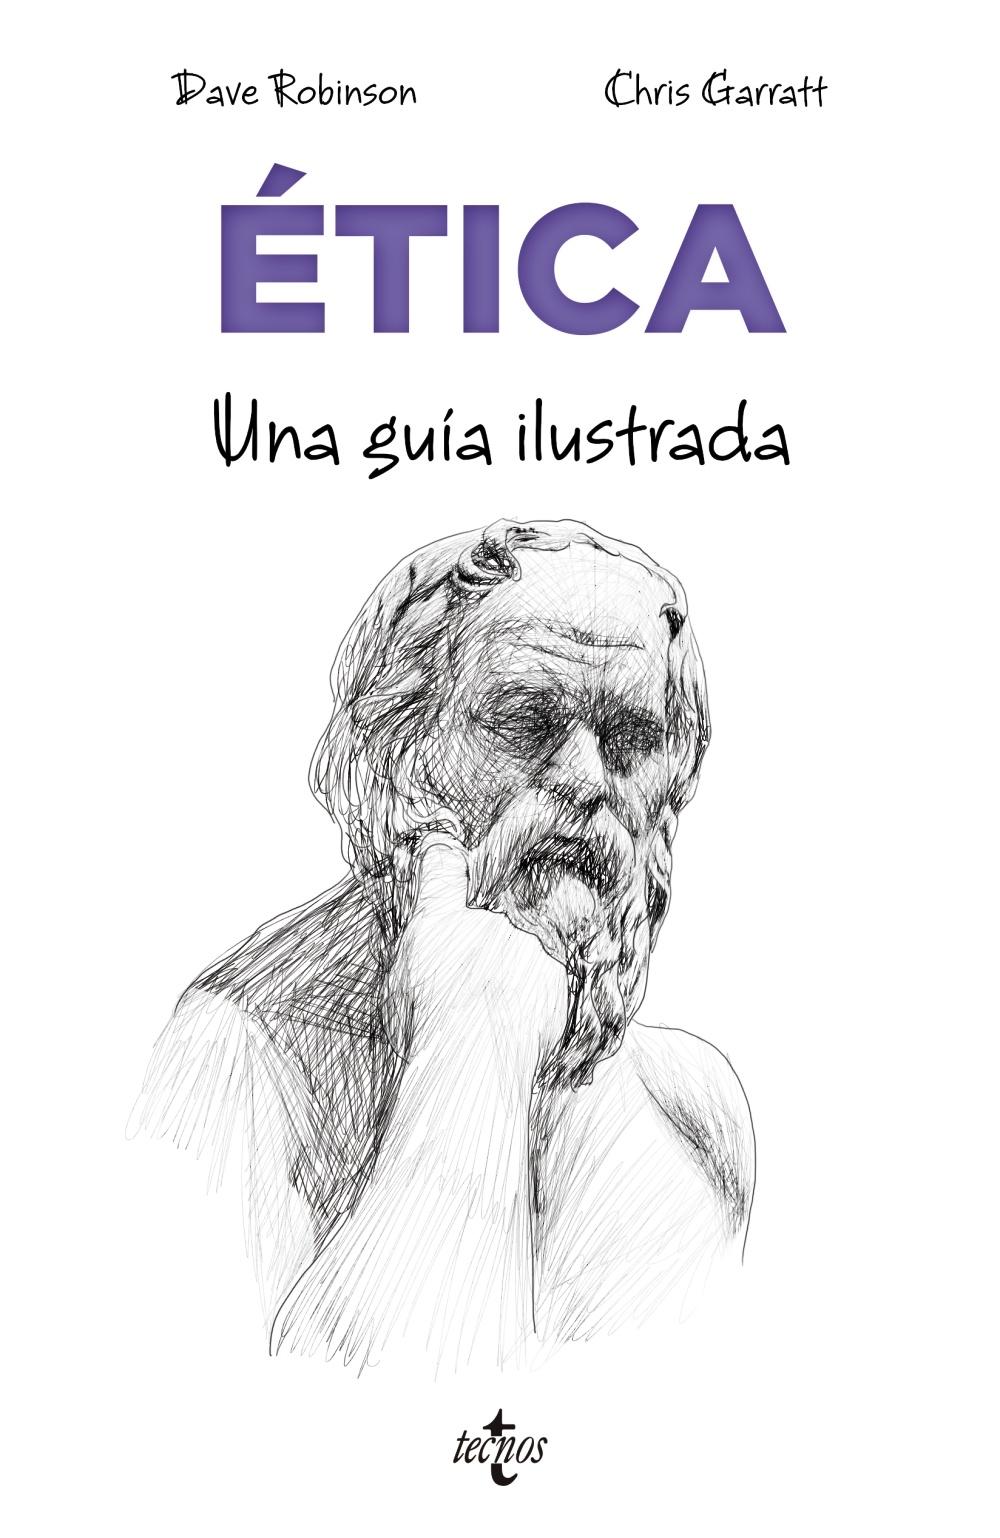 Ética "Una guía ilustrada"